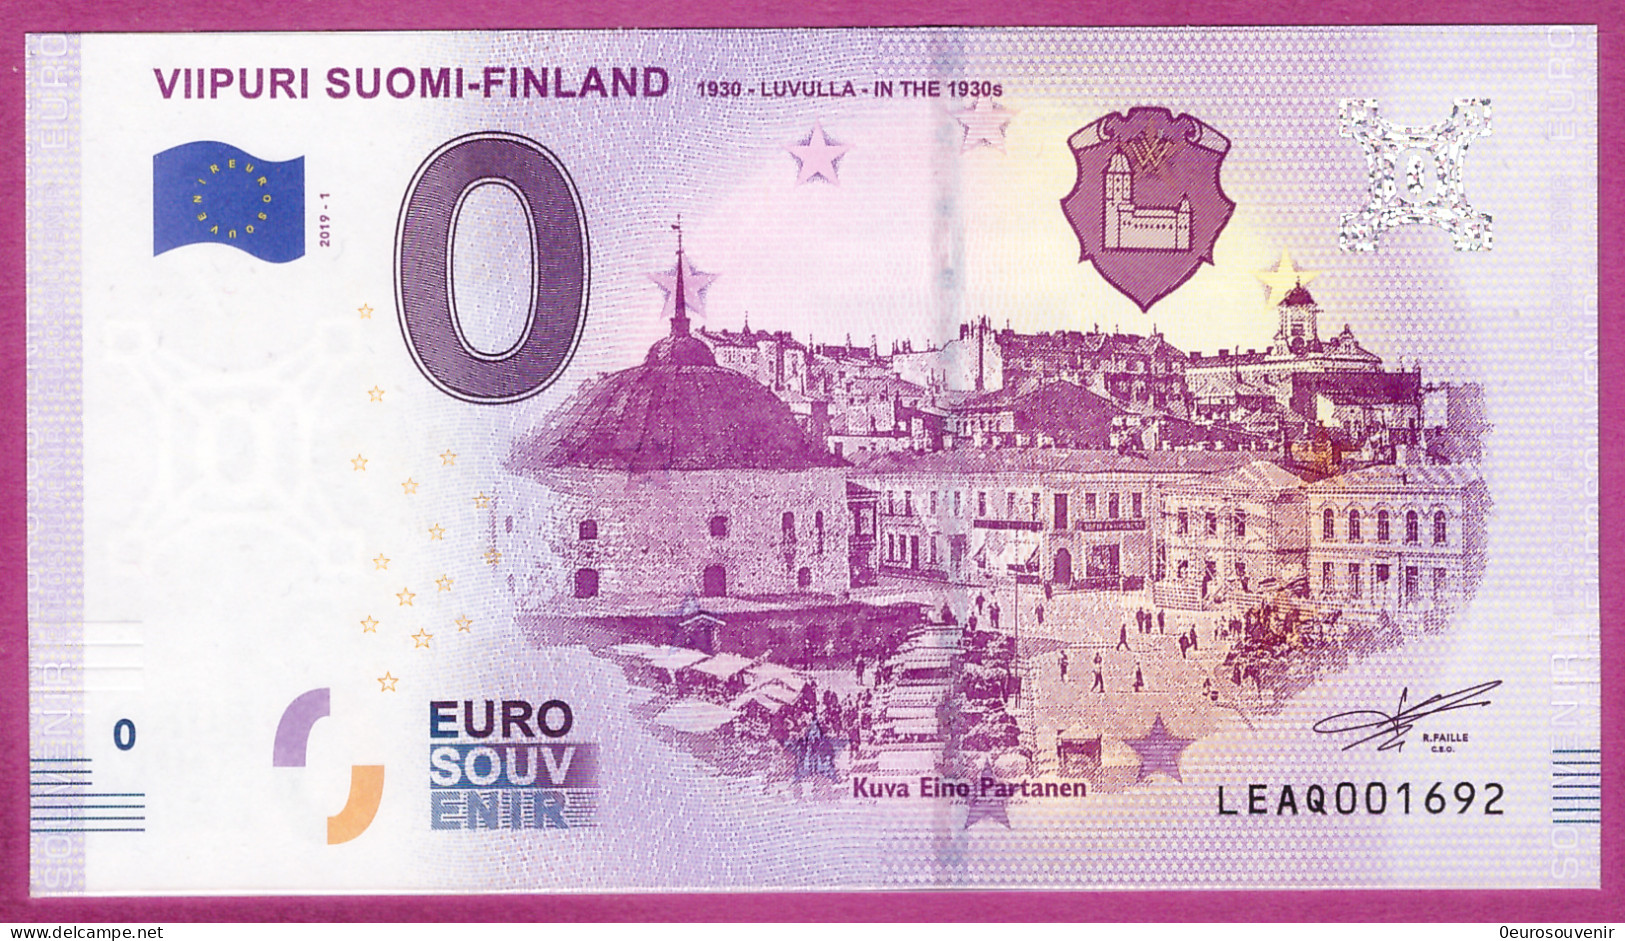 0-Euro LEAQ 2019-1 VIIPURI SUOMI-FINLAND 1930-LUVULLA-IN THE 1930s - Privatentwürfe